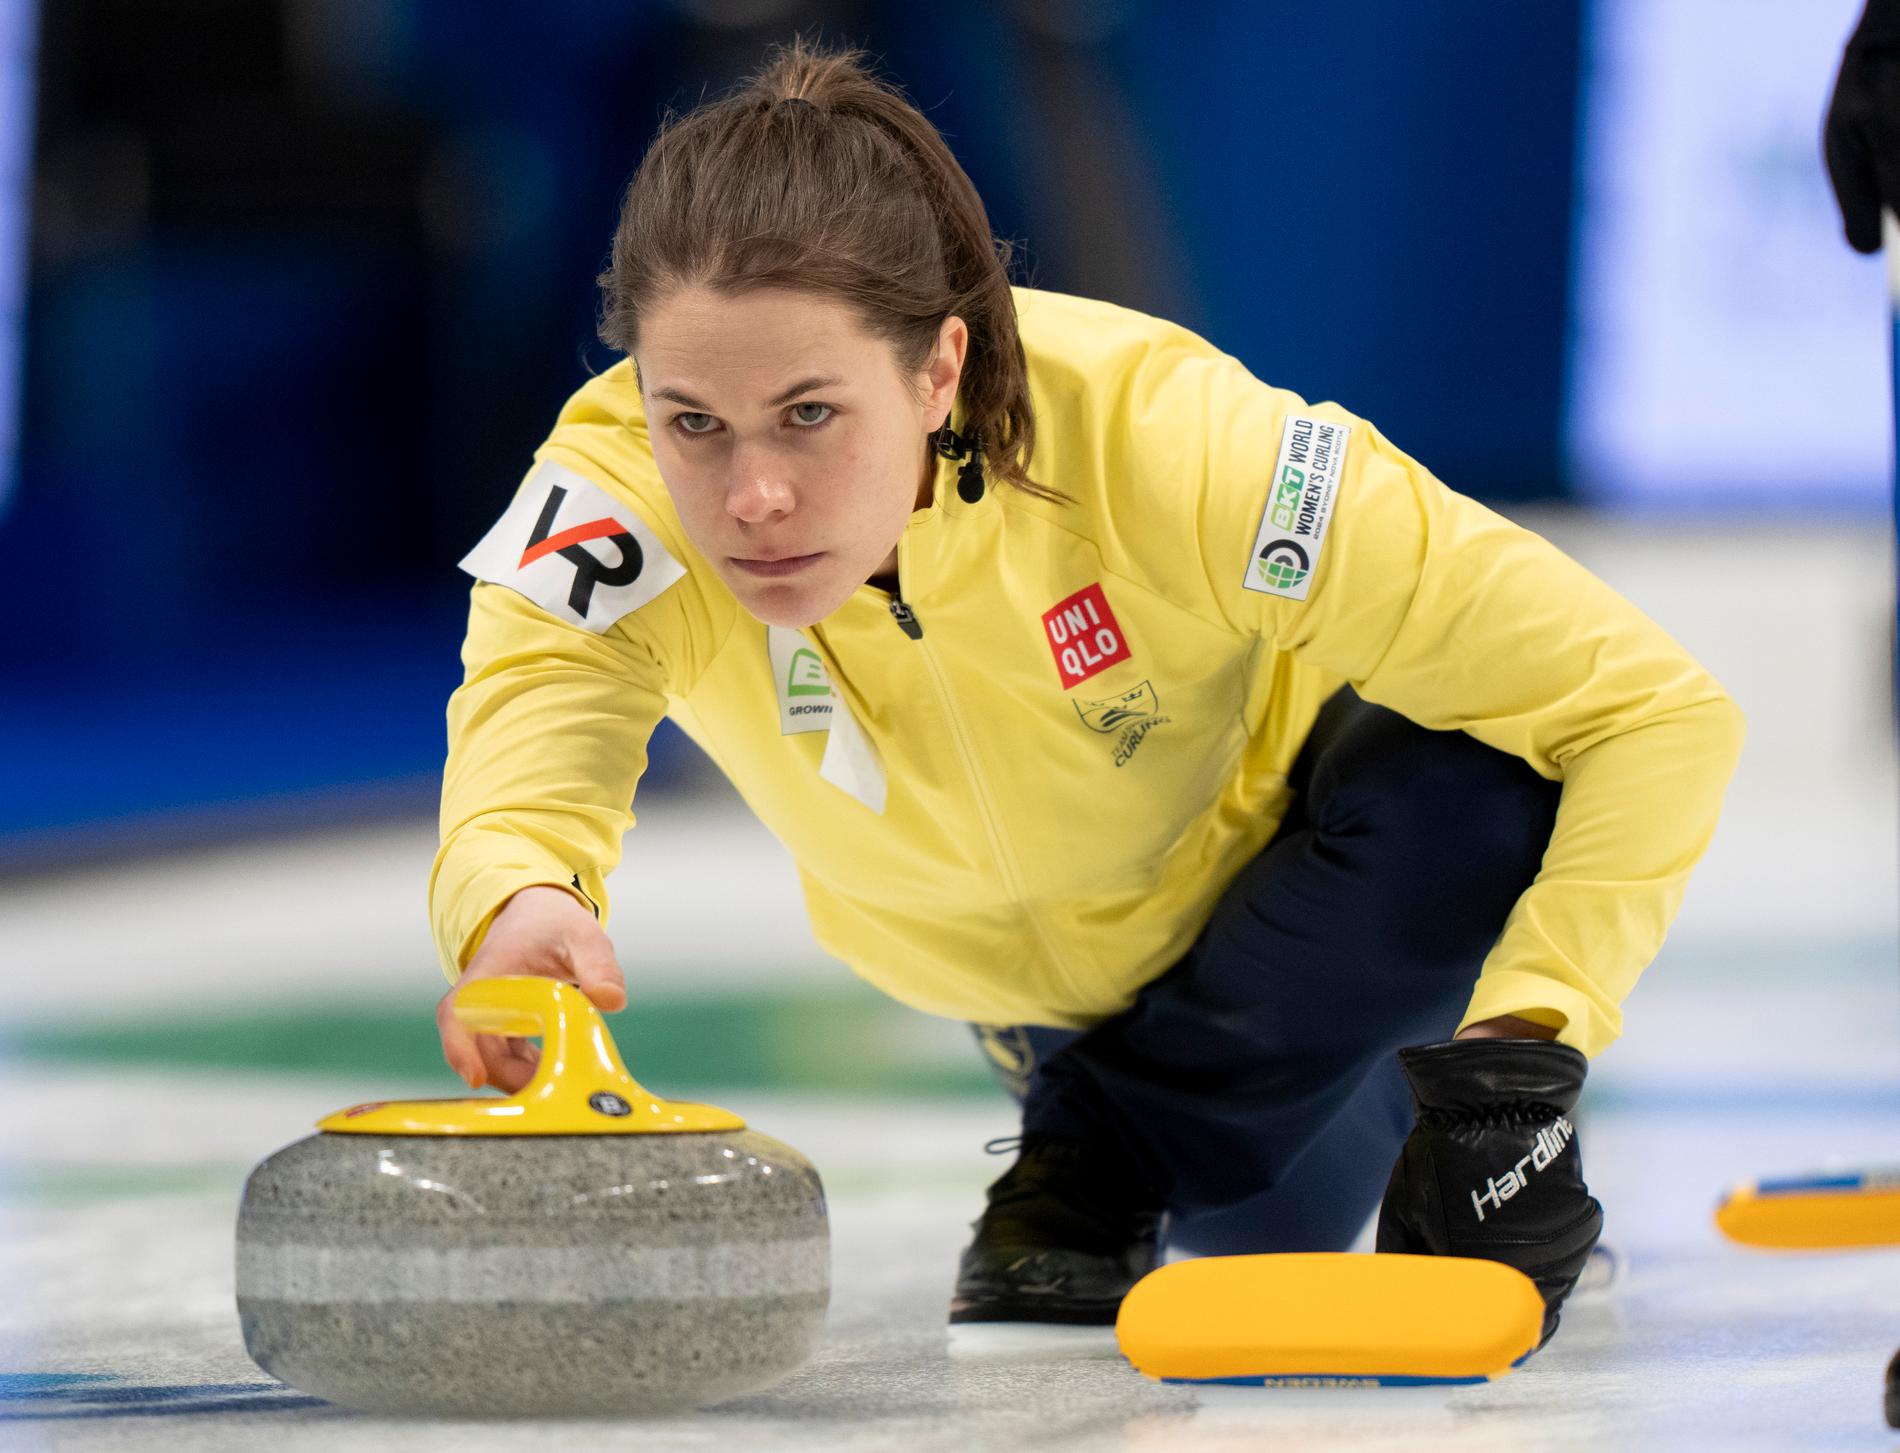 Sverige med skippern Anna Hasselborg får möta Sydkorea i slutspelet i curling-VM i Kanada. Vinner de den matchen väntar Kanada i semifinal.